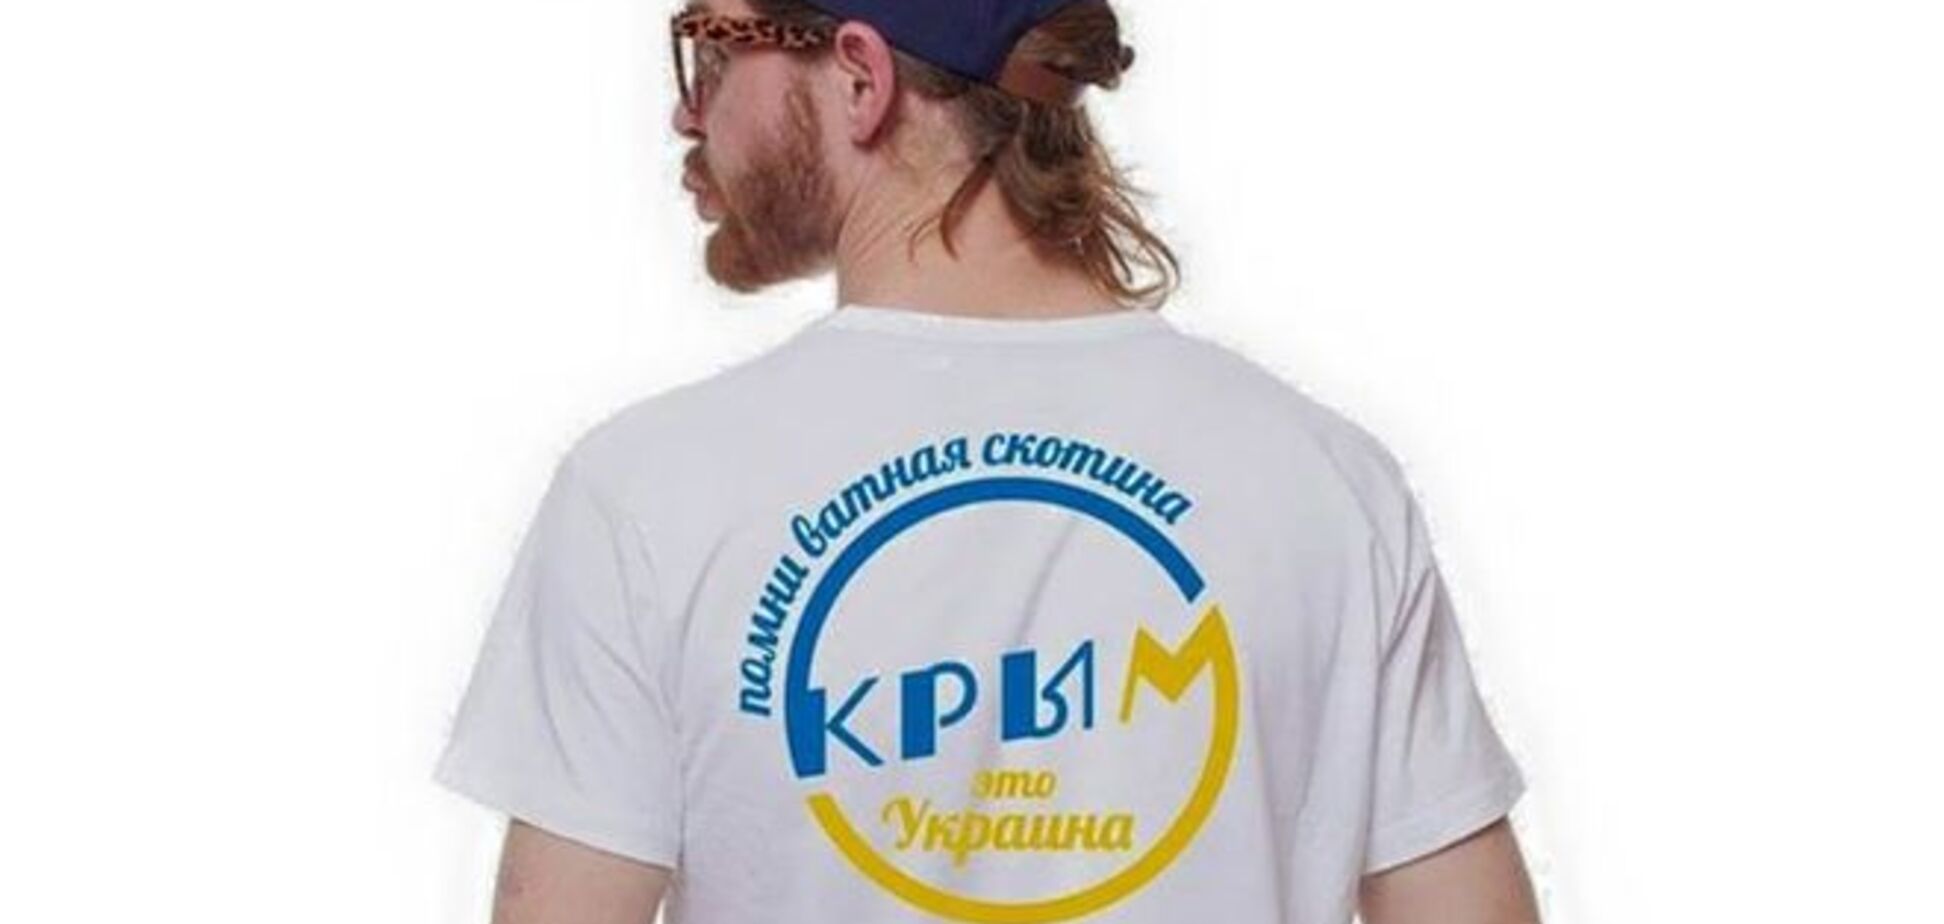 Помни, ватная скотина: Крым - это Украина!